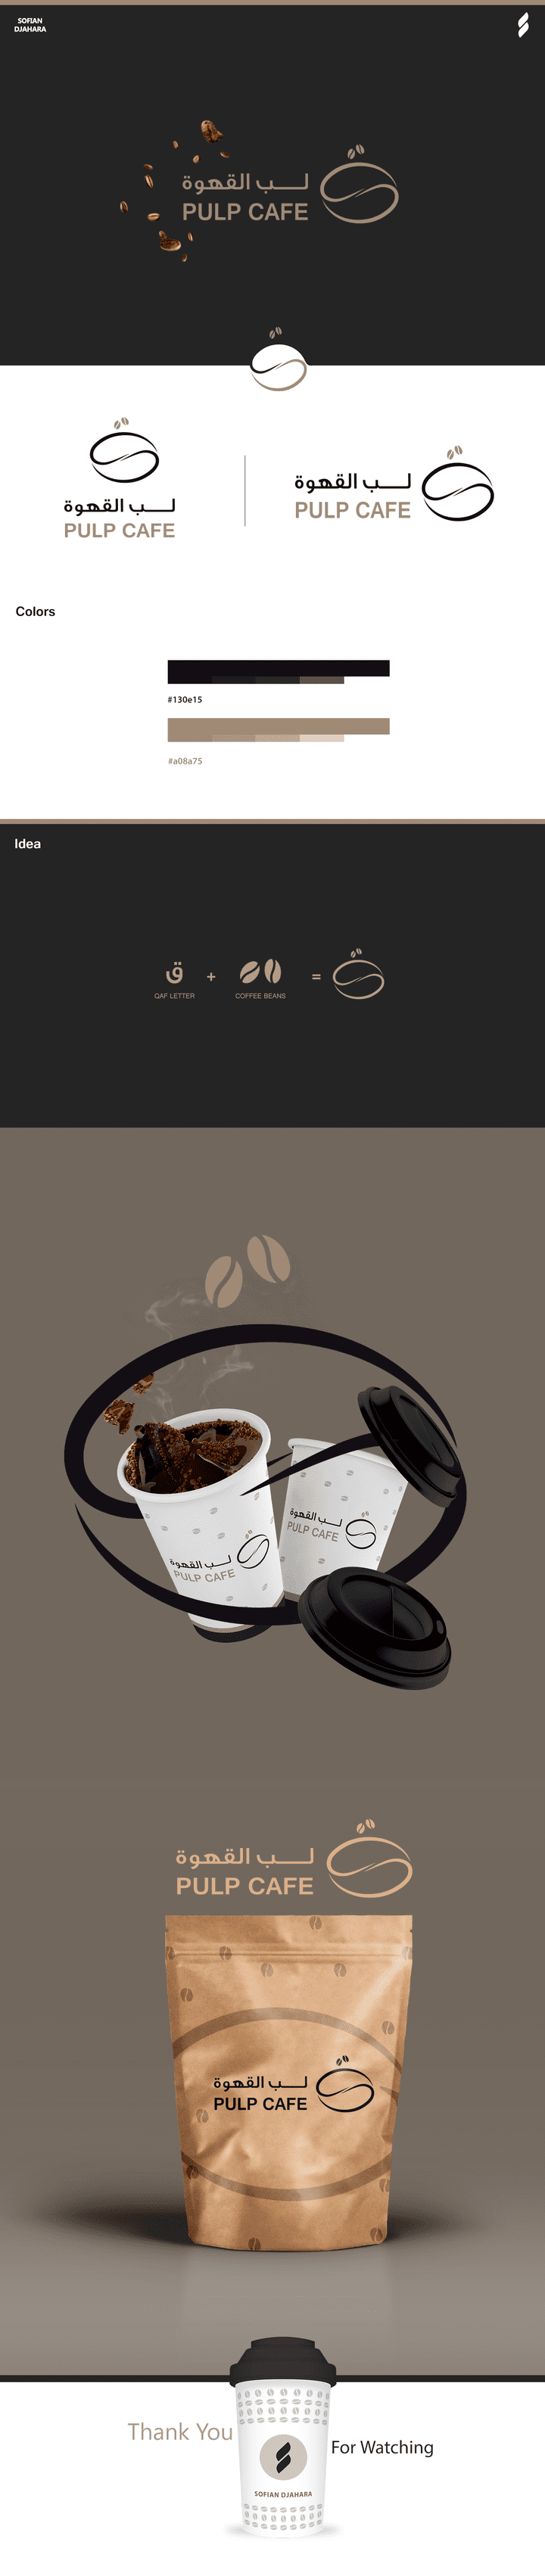 PULP CAFE LOGO | KSA